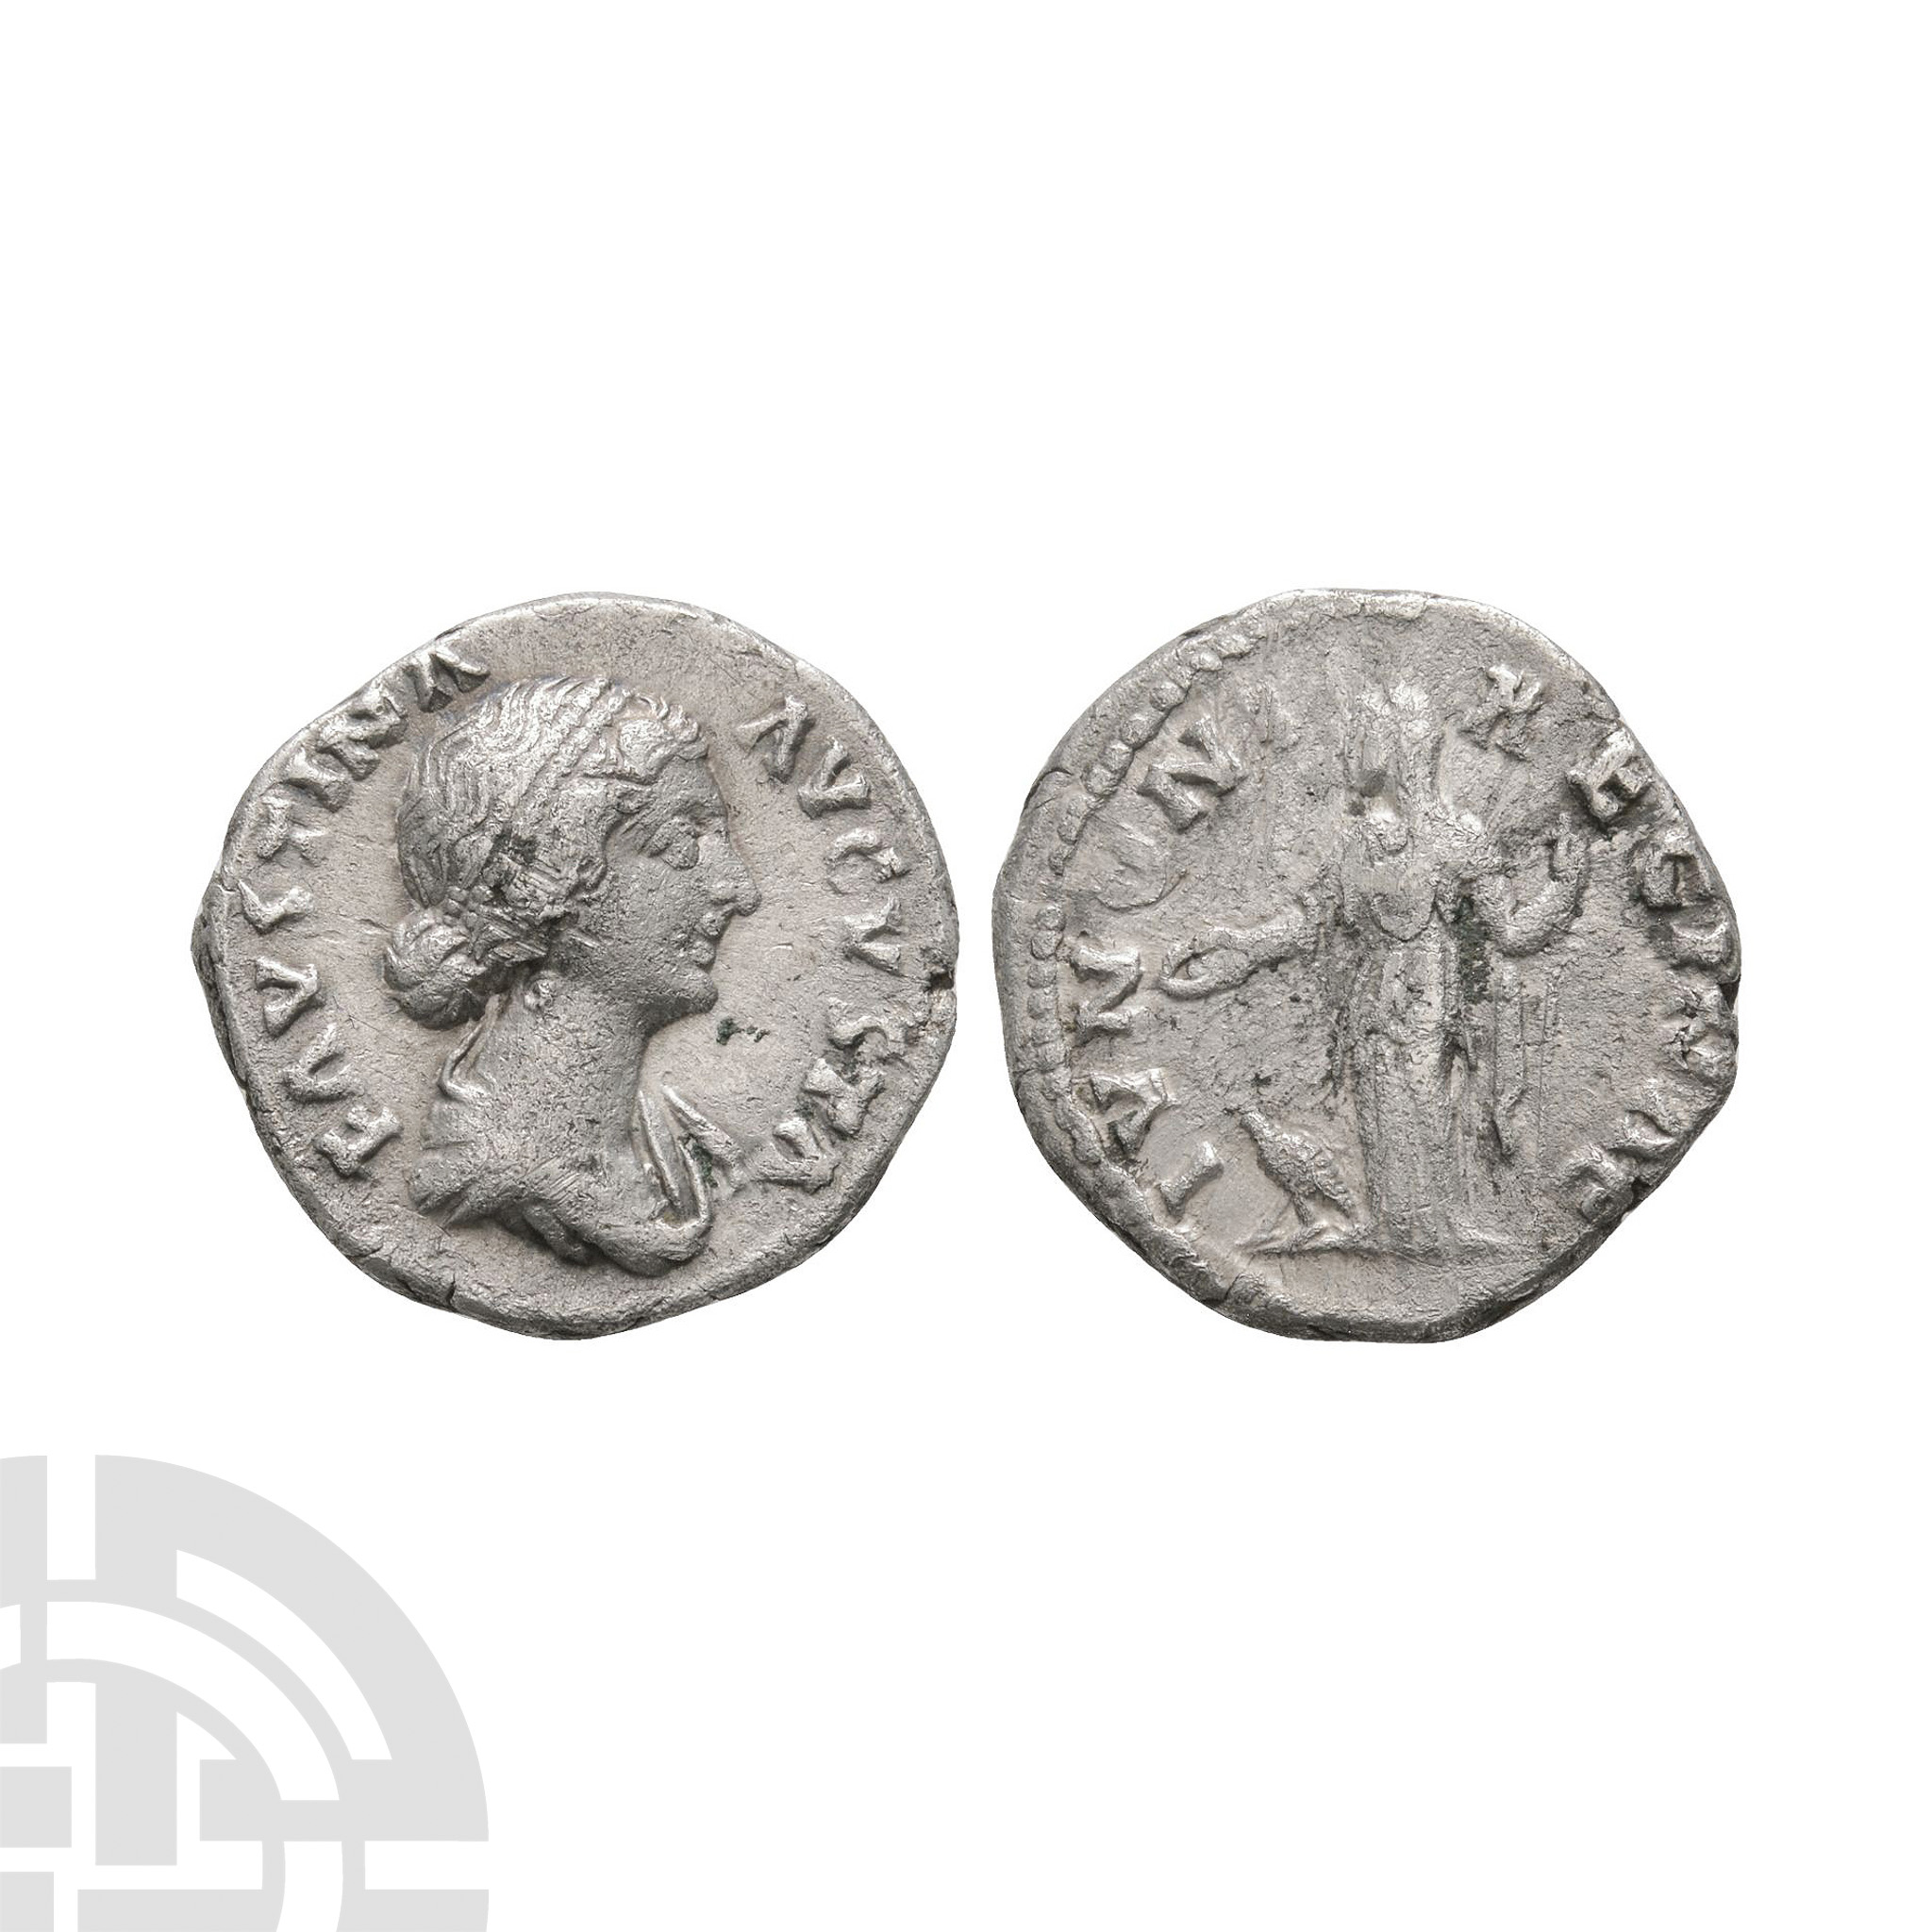 Ancient Roman Imperial Coins - Faustina - AR Juno Denarius